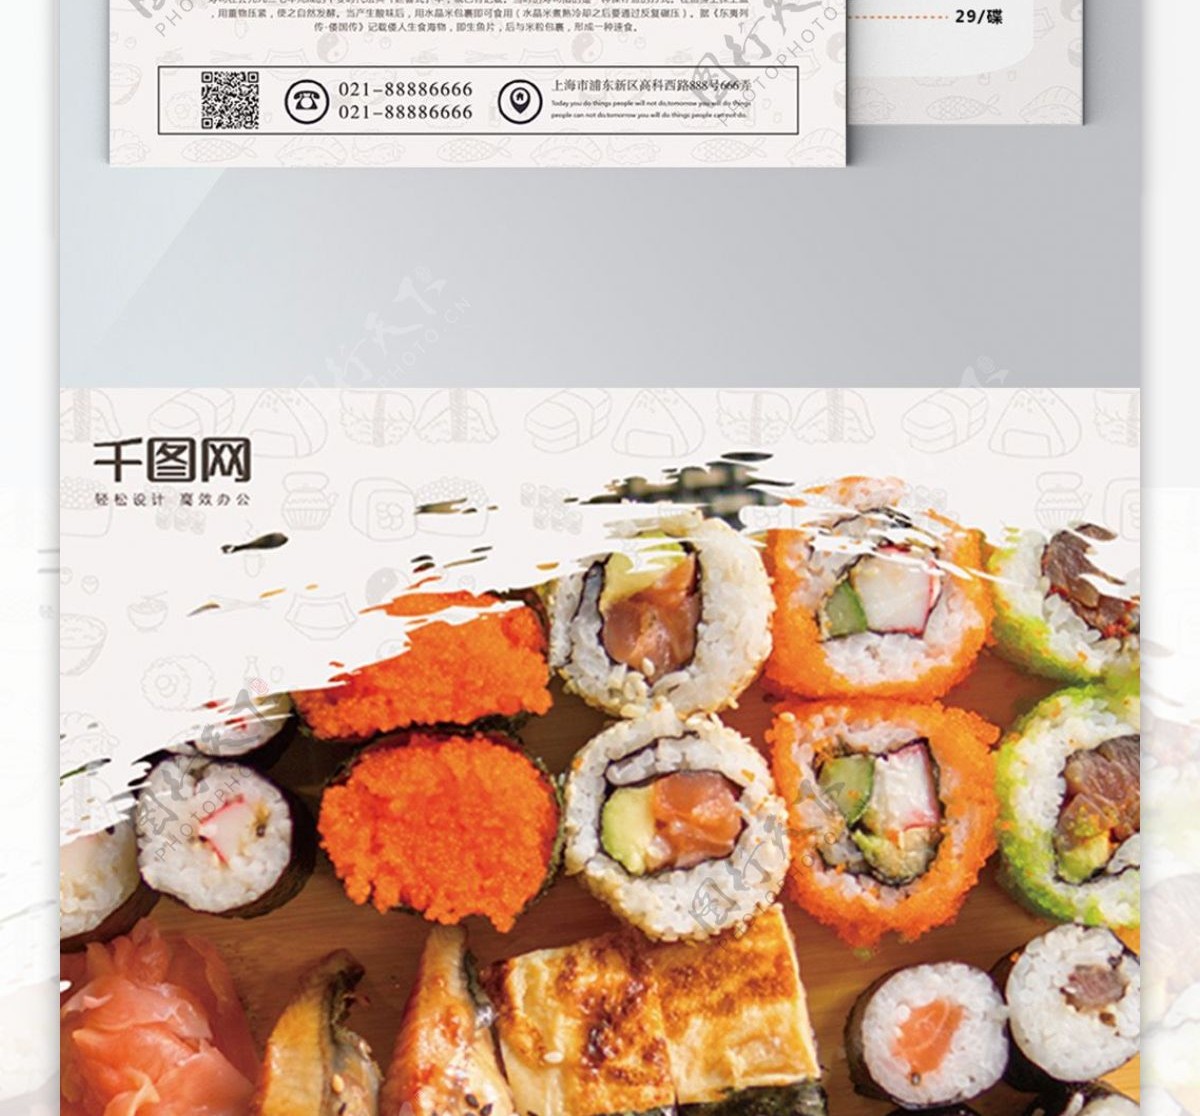 简约风日本纯正美味寿司宣传单